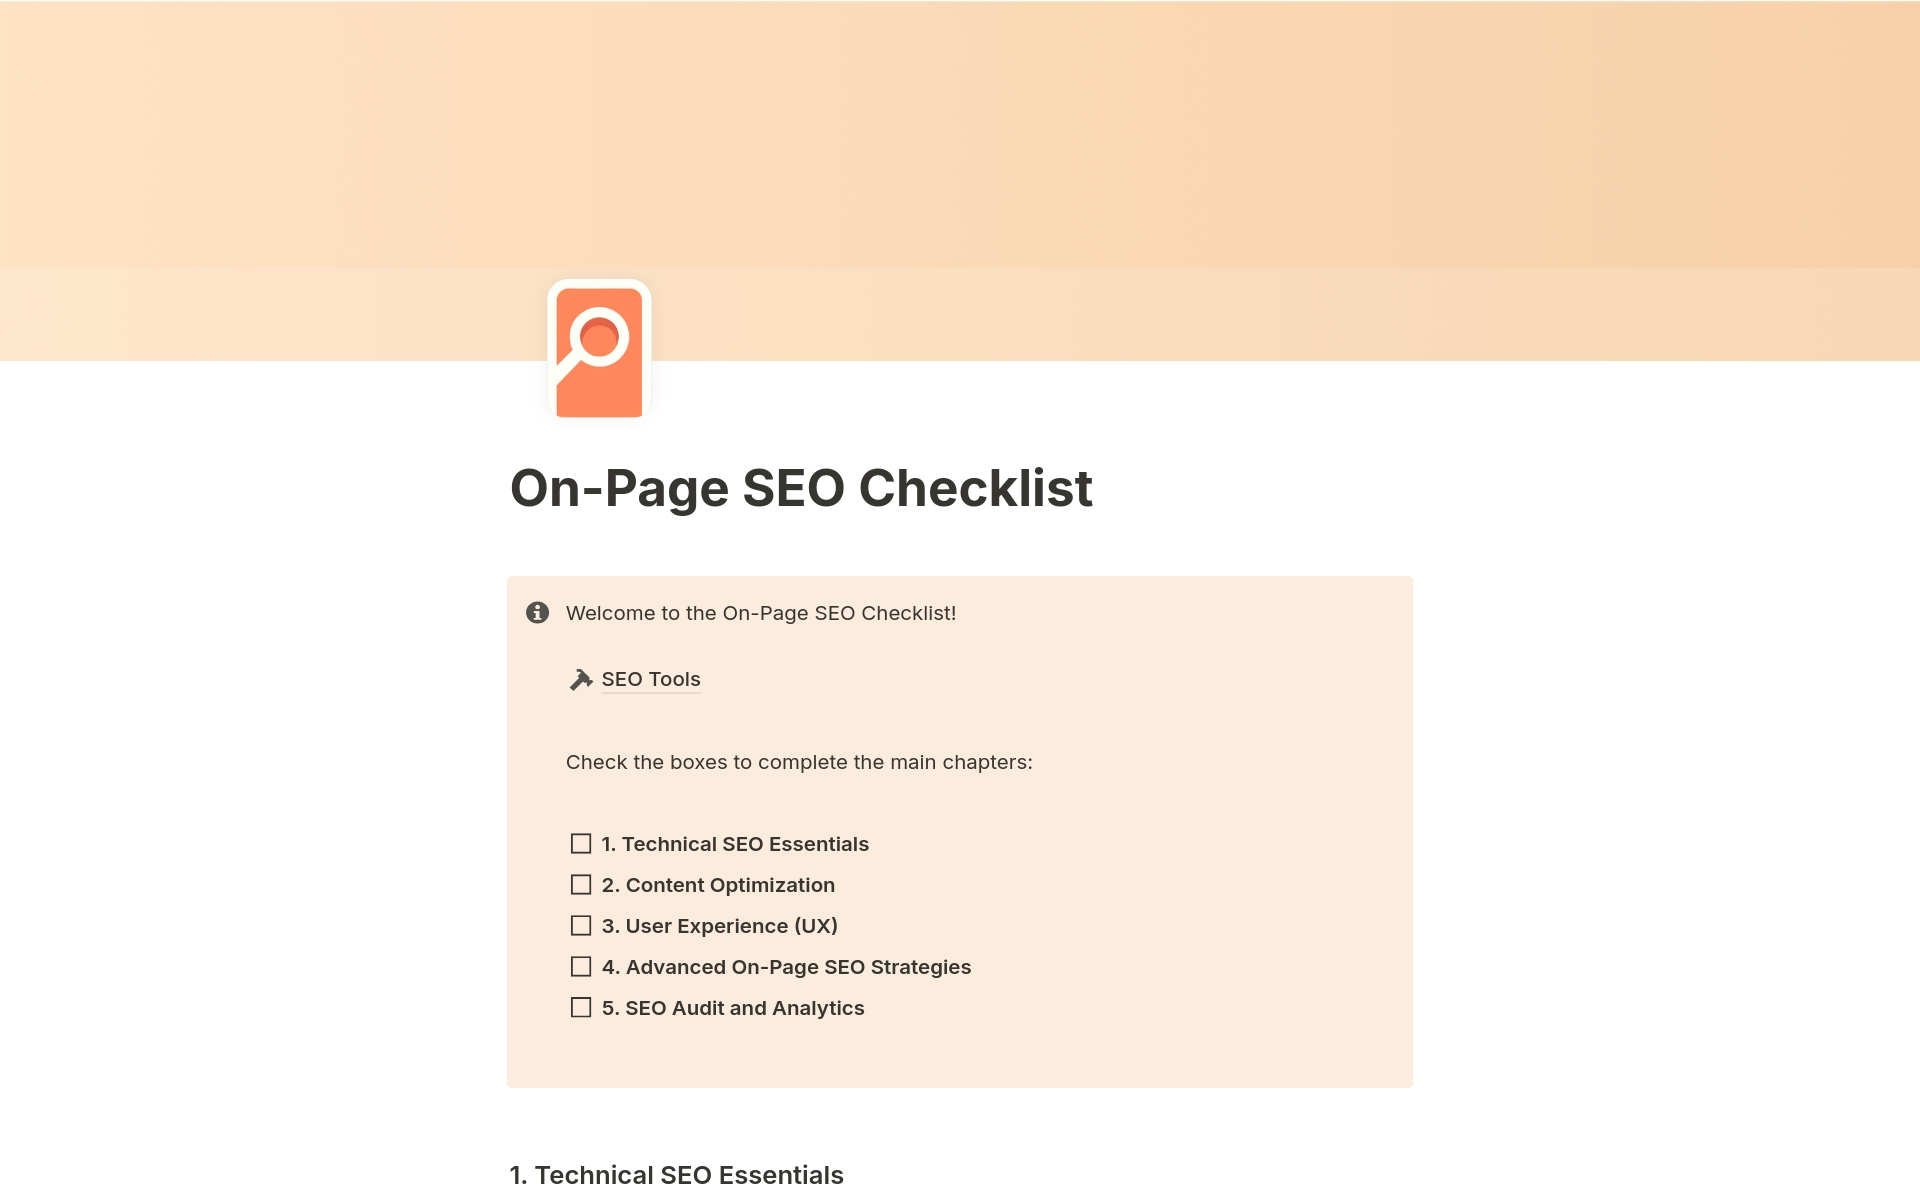 Vista previa de una plantilla para On-Page SEO Checklist